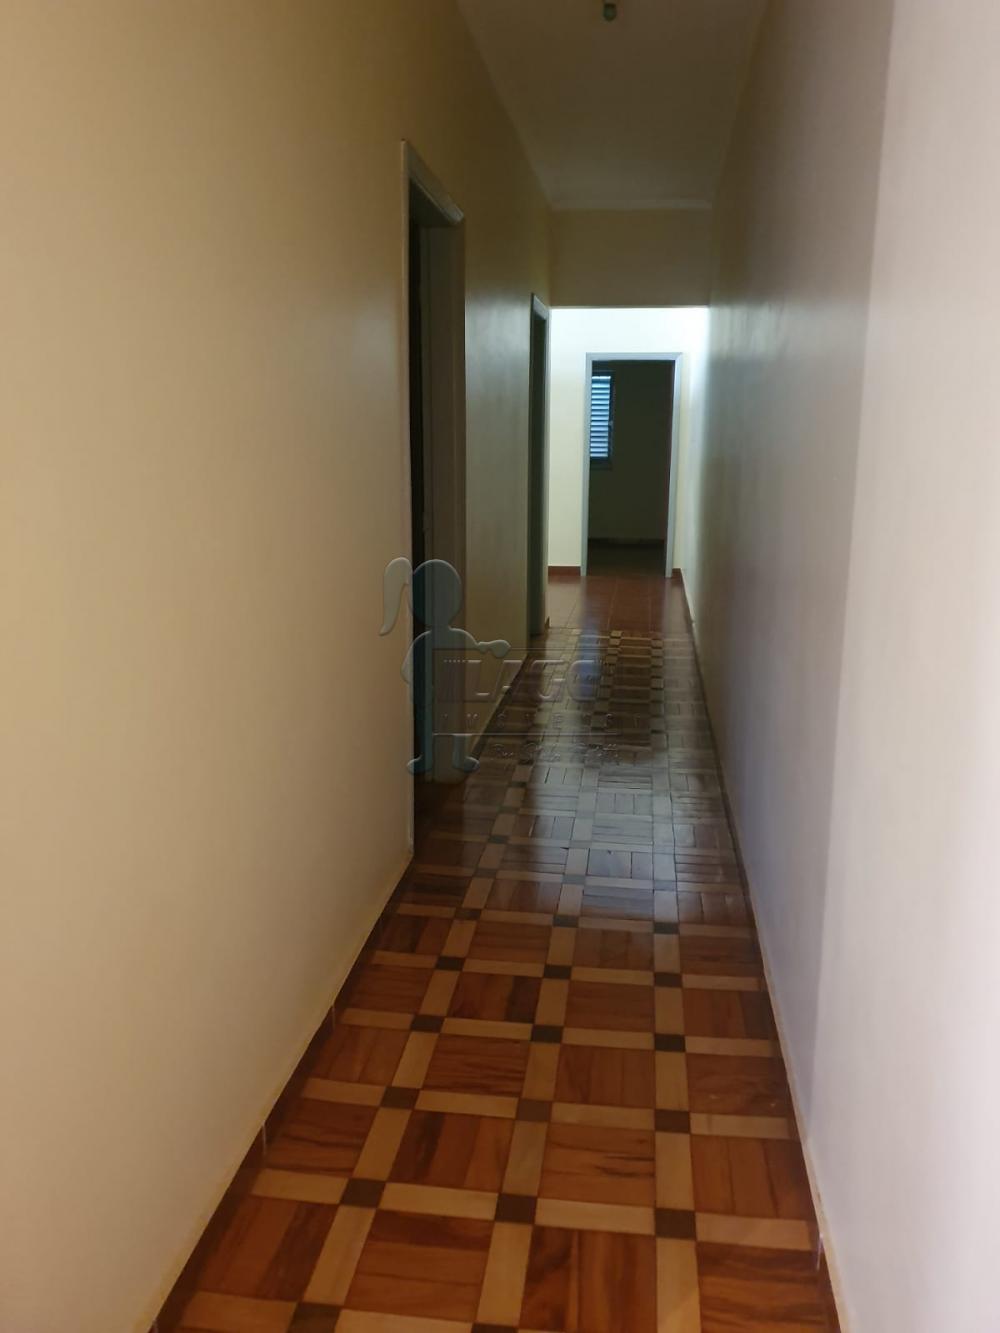 Alugar Casa / Padrão em Ribeirão Preto R$ 1.600,00 - Foto 5